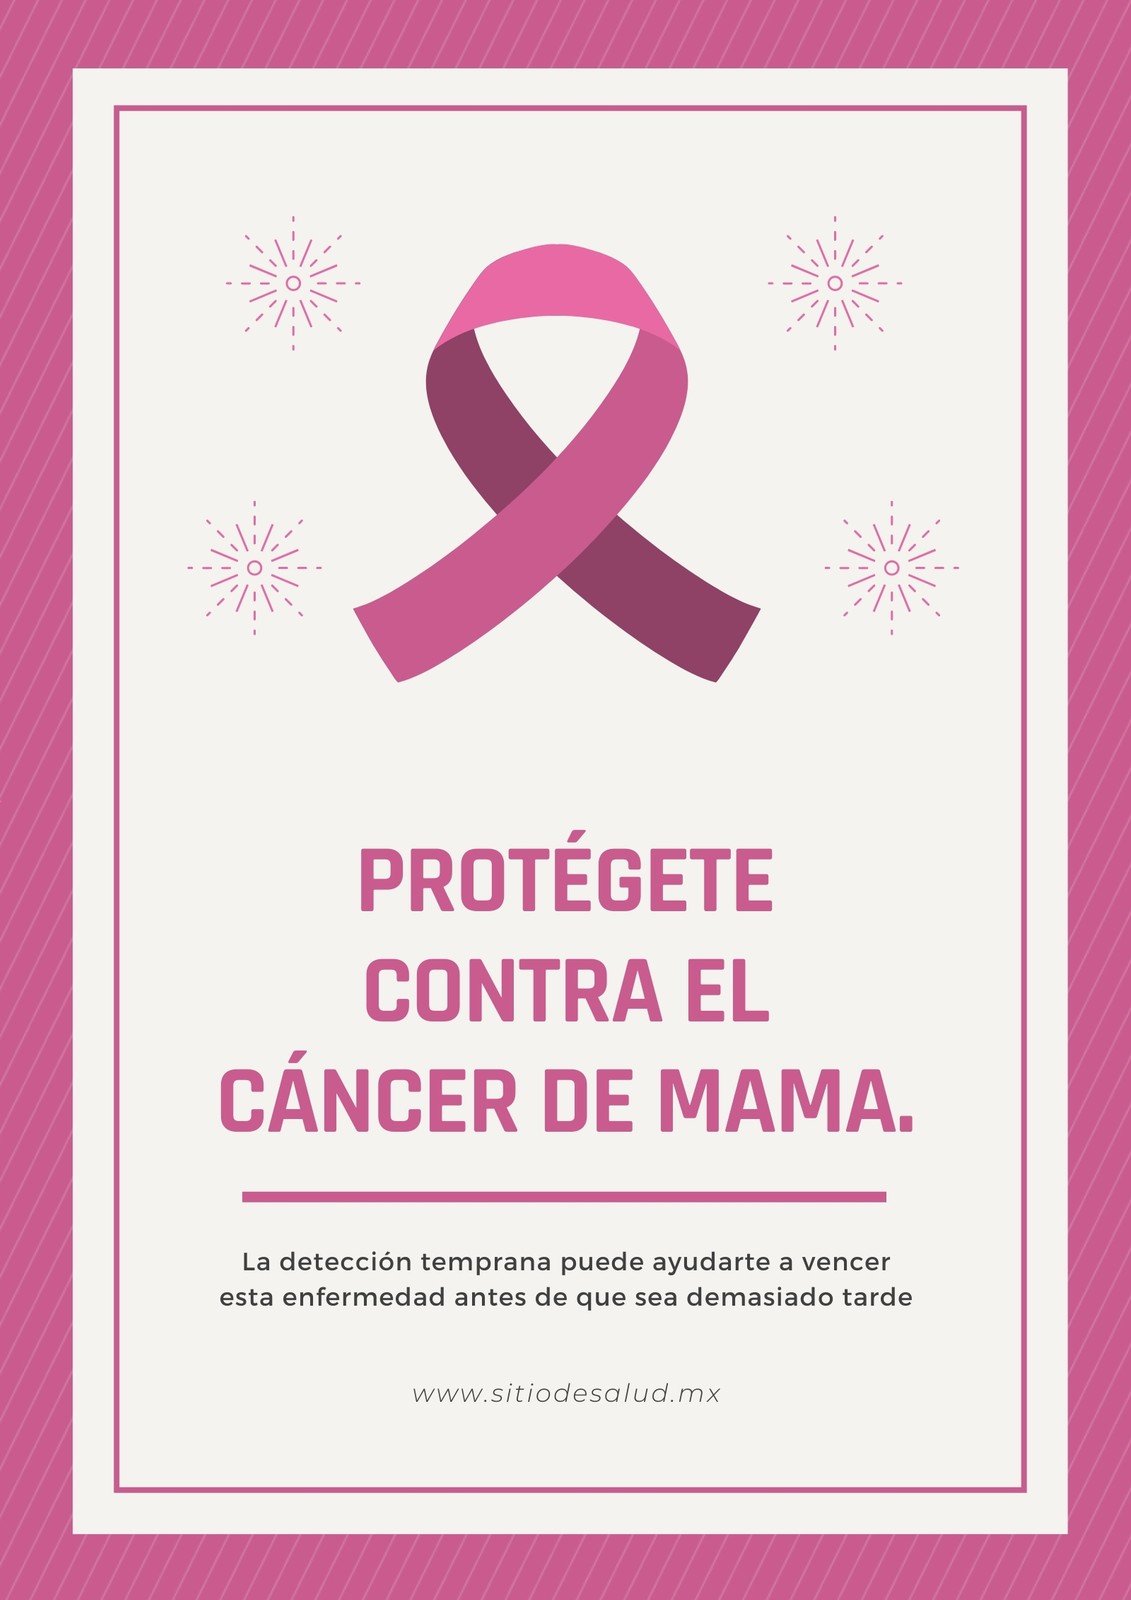 Plantillas para carteles sobre el cáncer de mama | Canva